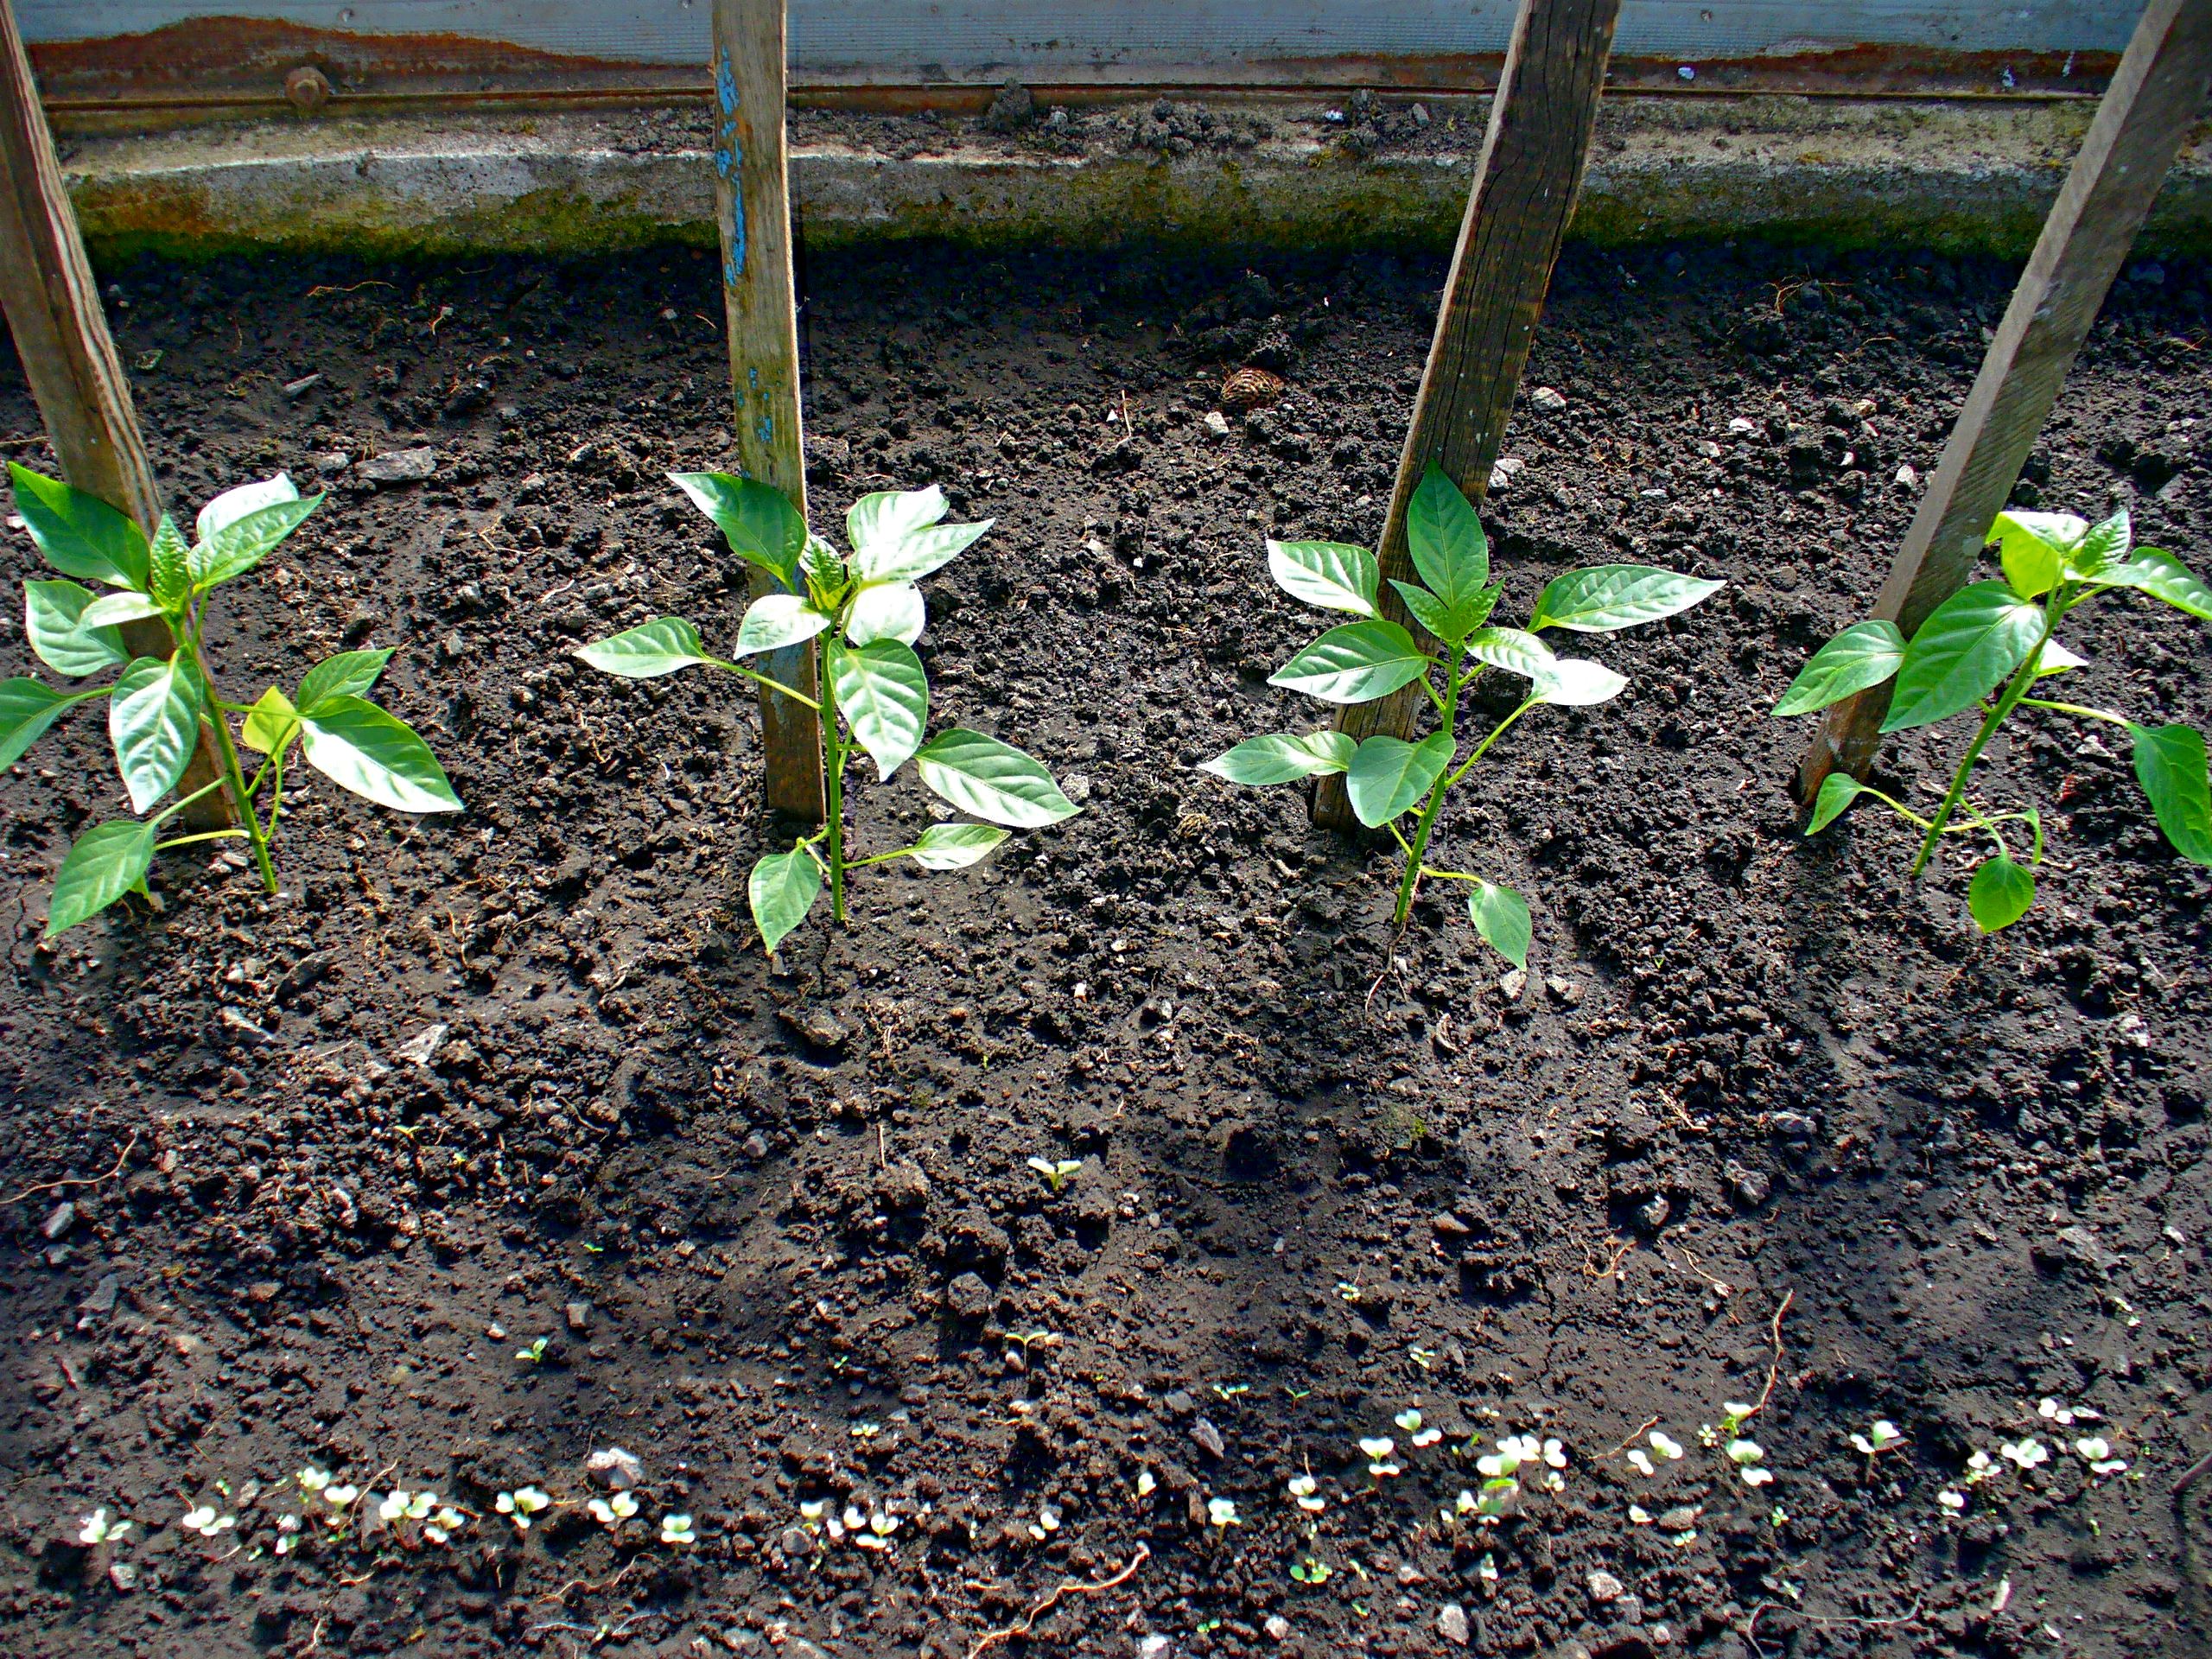 Как вырастить болгарский перец в теплице из поликарбоната: нюансы выращивания, посадки и ухода